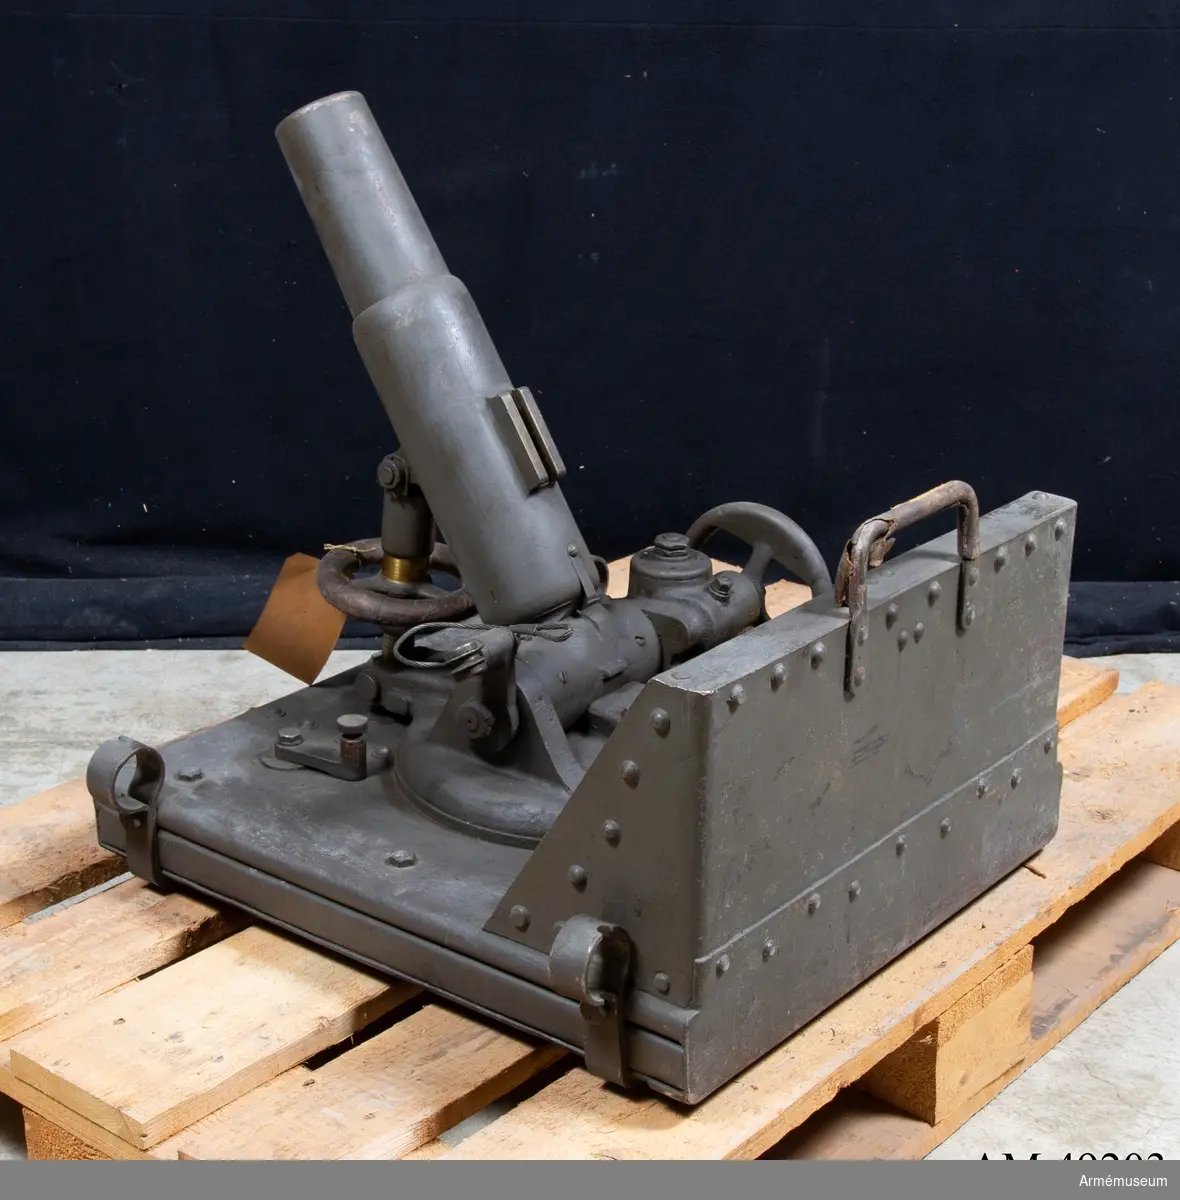 Grupp E X b.
Samhörande med 6 cm granatkastare m/1918 är avfyringslina med  2 st block, 4 st krampor, bäranordning för eldrör, bärsele,  2 st bärstänger, mynningsfodral, fyrsnöre, 2 st  förankringspålar, instrumentlåda, nyckel till lagerhylsa,  rörnyckel, 1 sats reservdelar.
AJS.